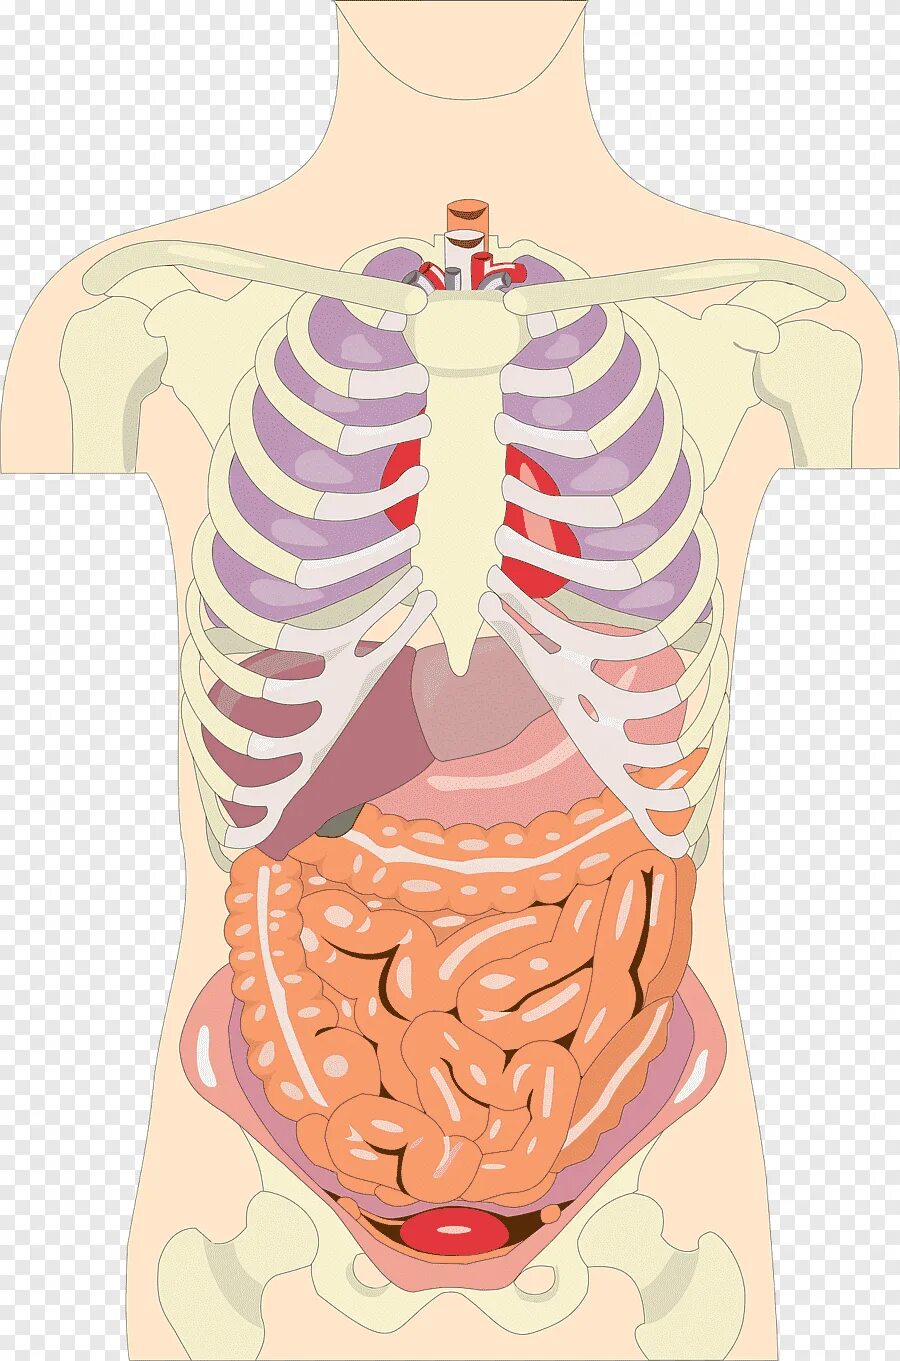 Органы человека картинка. Внутренние органы. Внутренниеиорганы человека. Органы человека. Тело человека внутренние органы.